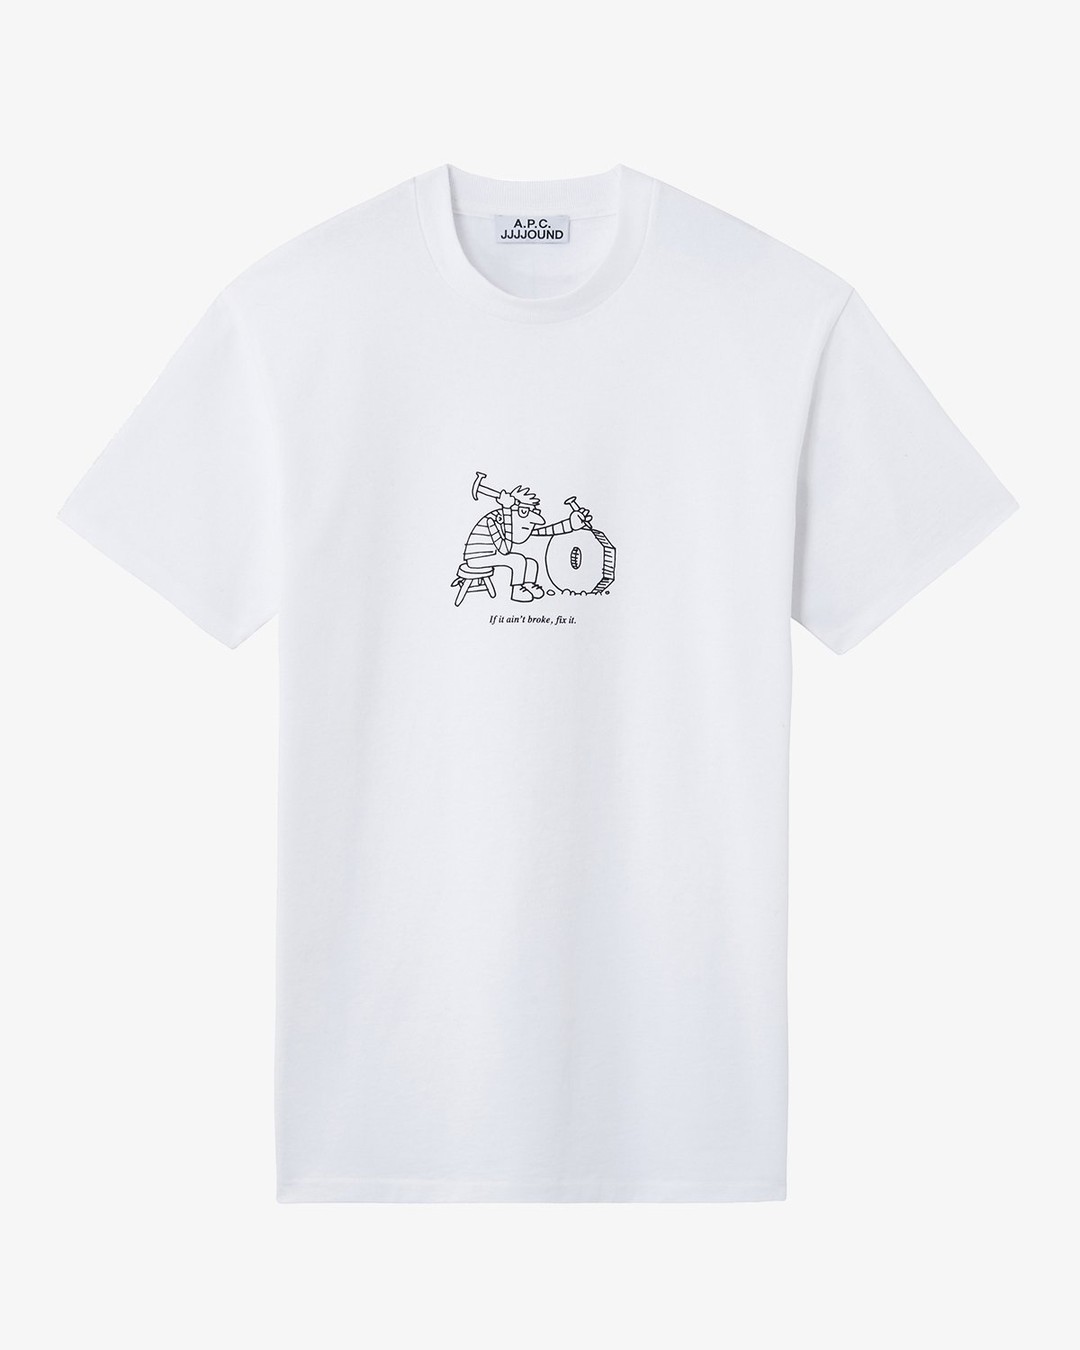 A.P.C. x JJJJound – T-Shirt Rough White | Highsnobiety Shop